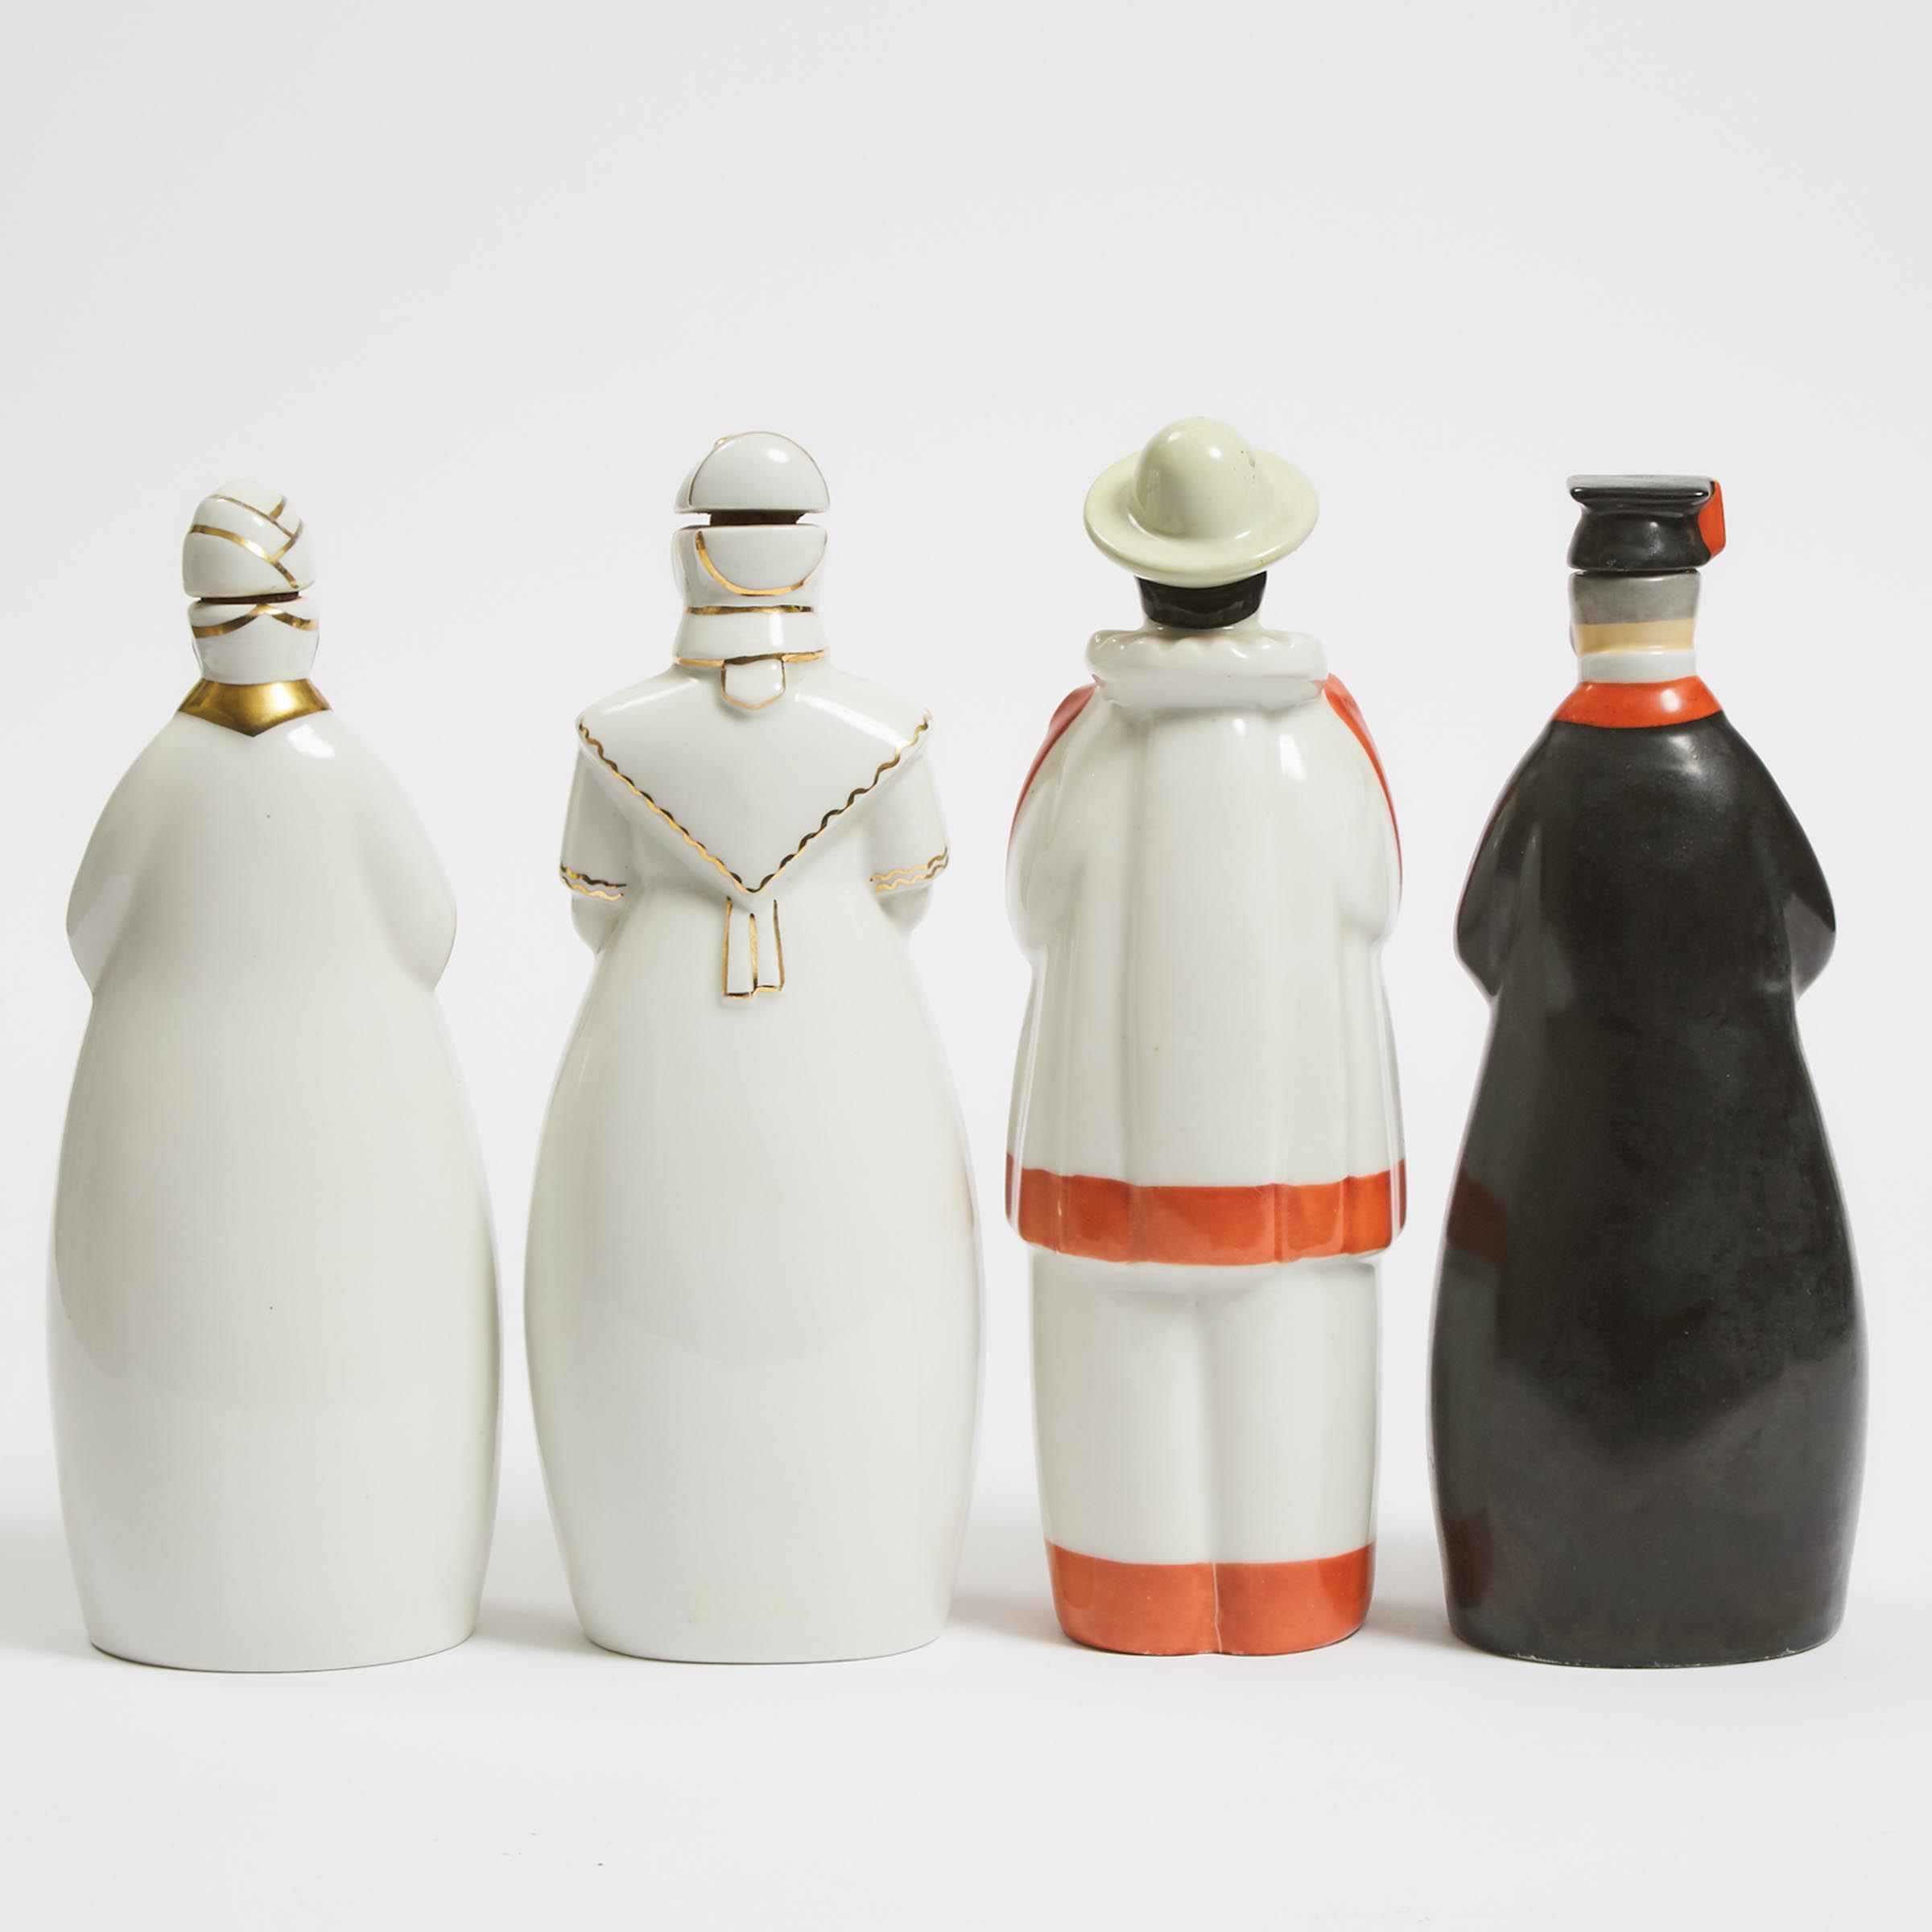 Four Robj Character Bottles, Paris, c.1925